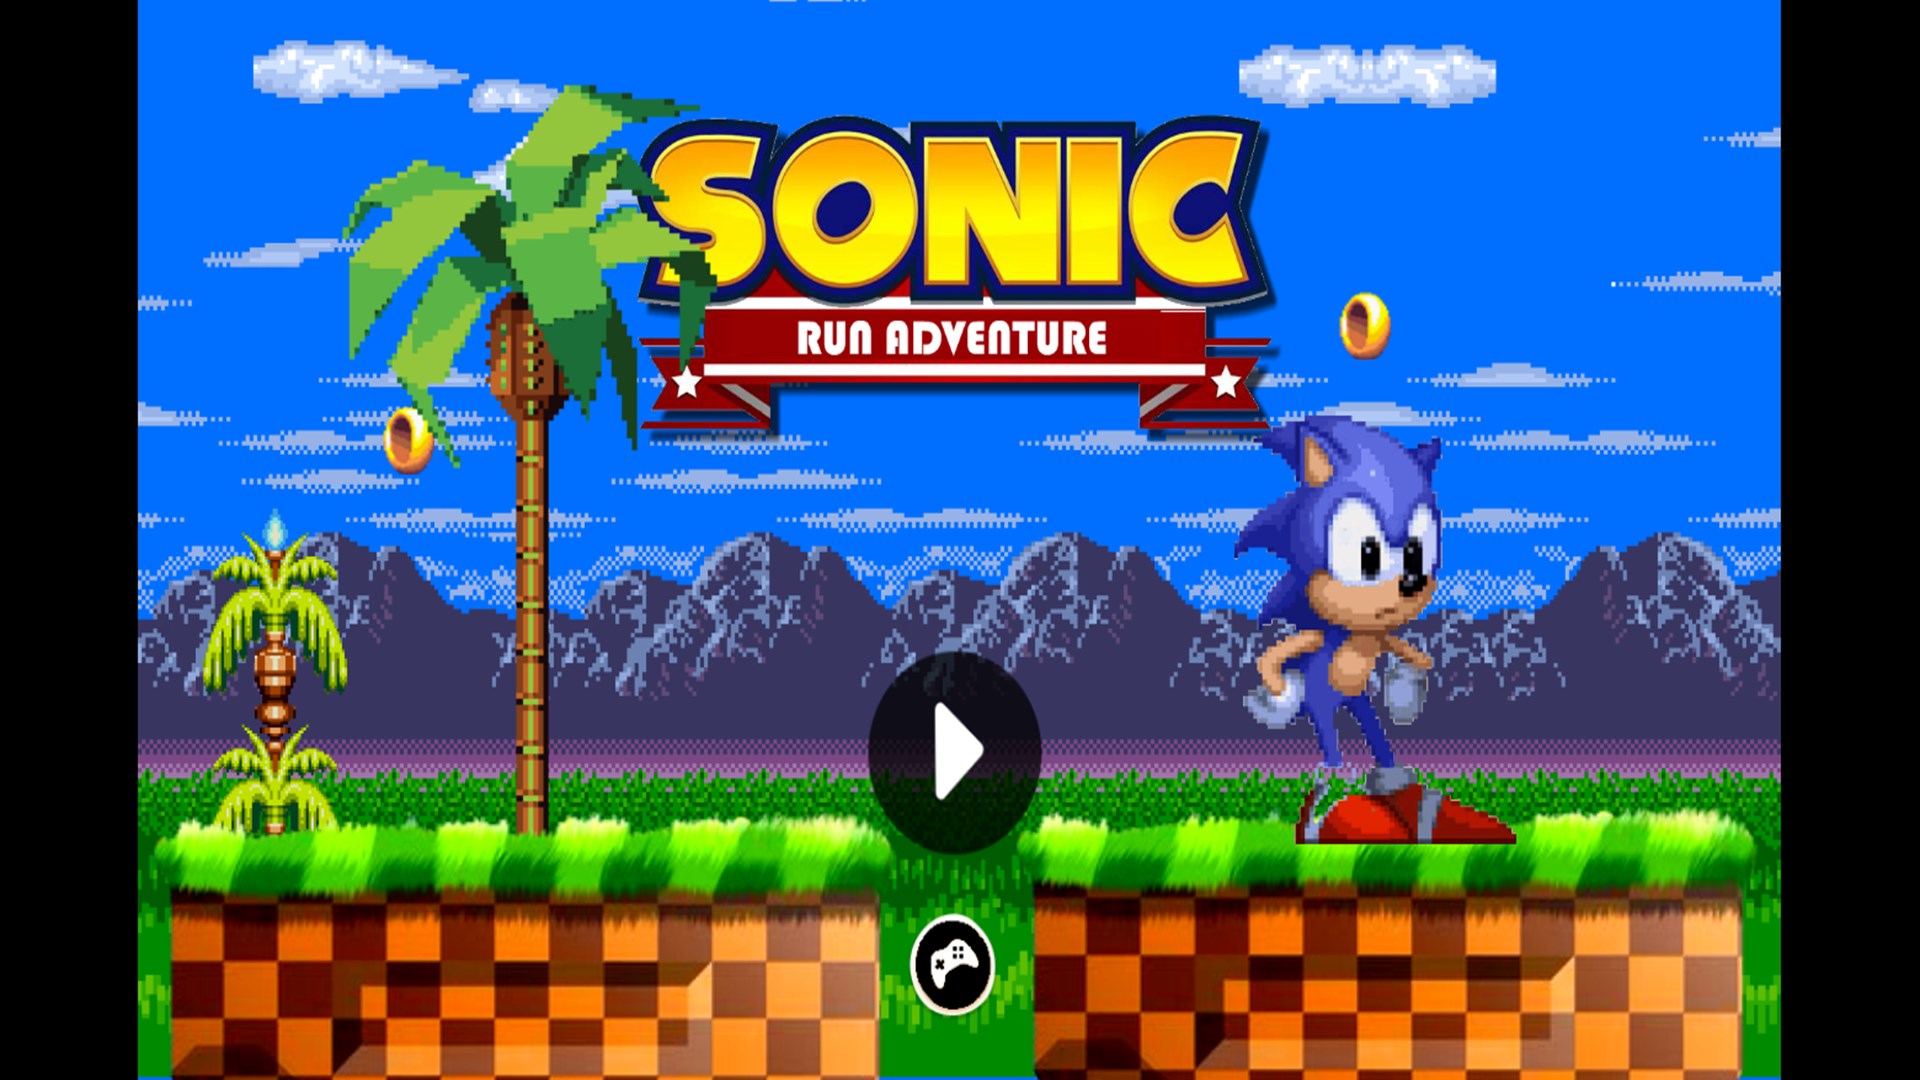 Sonic Run Adventure là một trò chơi đầy thử thách và kịch tính. Bạn sẽ phải chiến đấu với đủ loại quái thú khác nhau để vượt qua các cấp độ khó khăn. Hãy cùng khám phá thế giới của Sonic và trổ tài chiến đấu của mình khi chơi trò chơi này nhé!